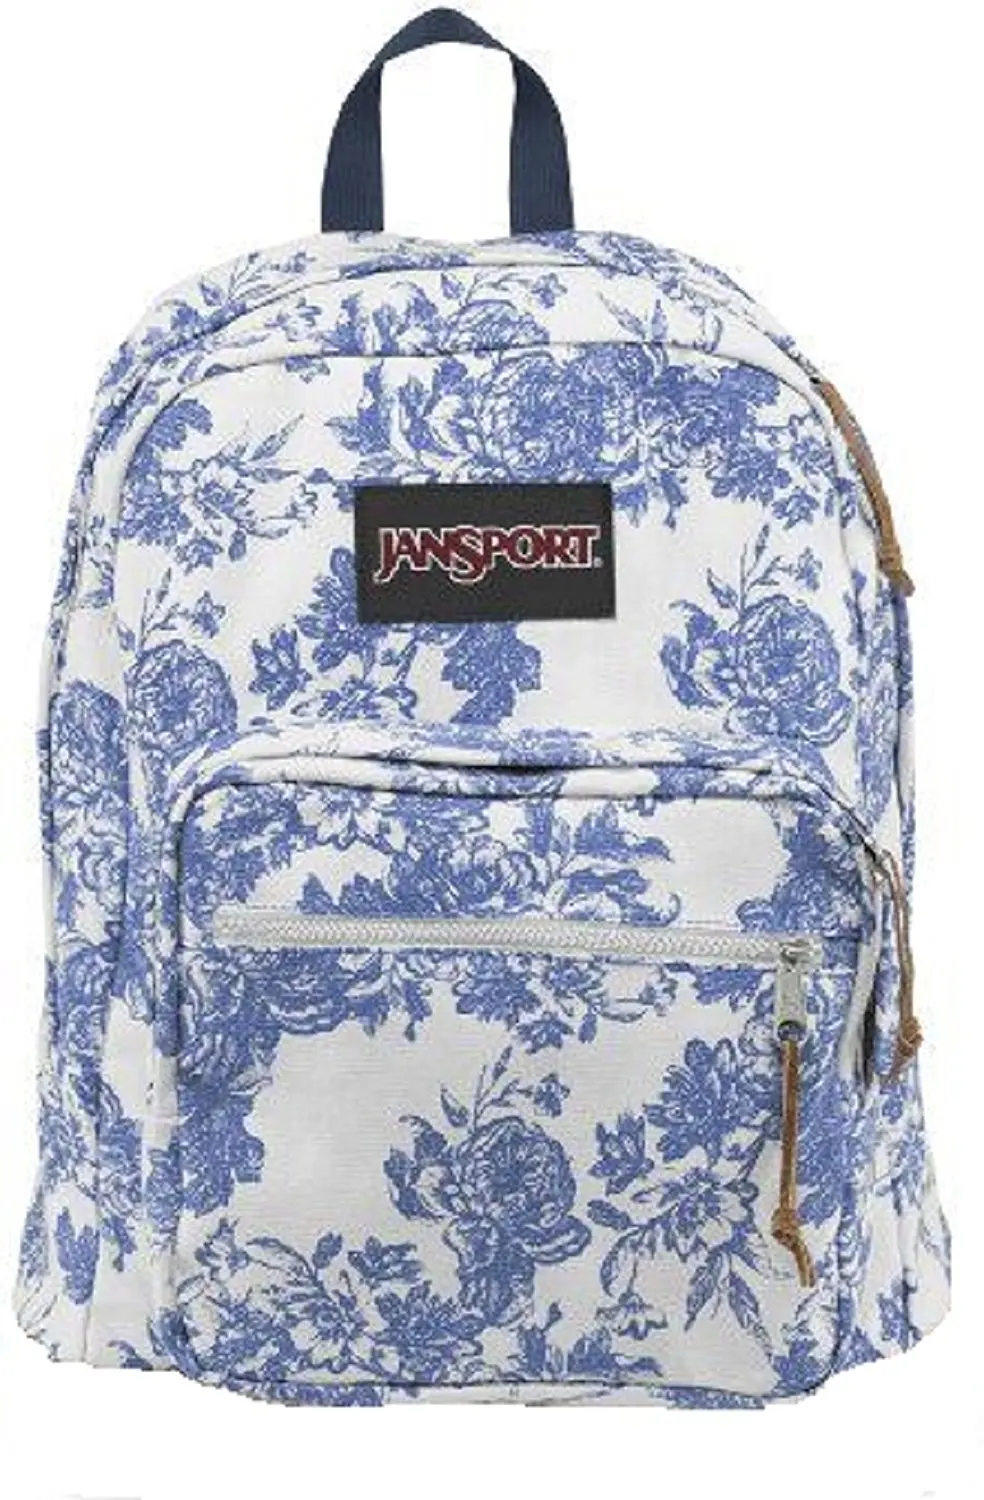 jansport backpack blue flowers